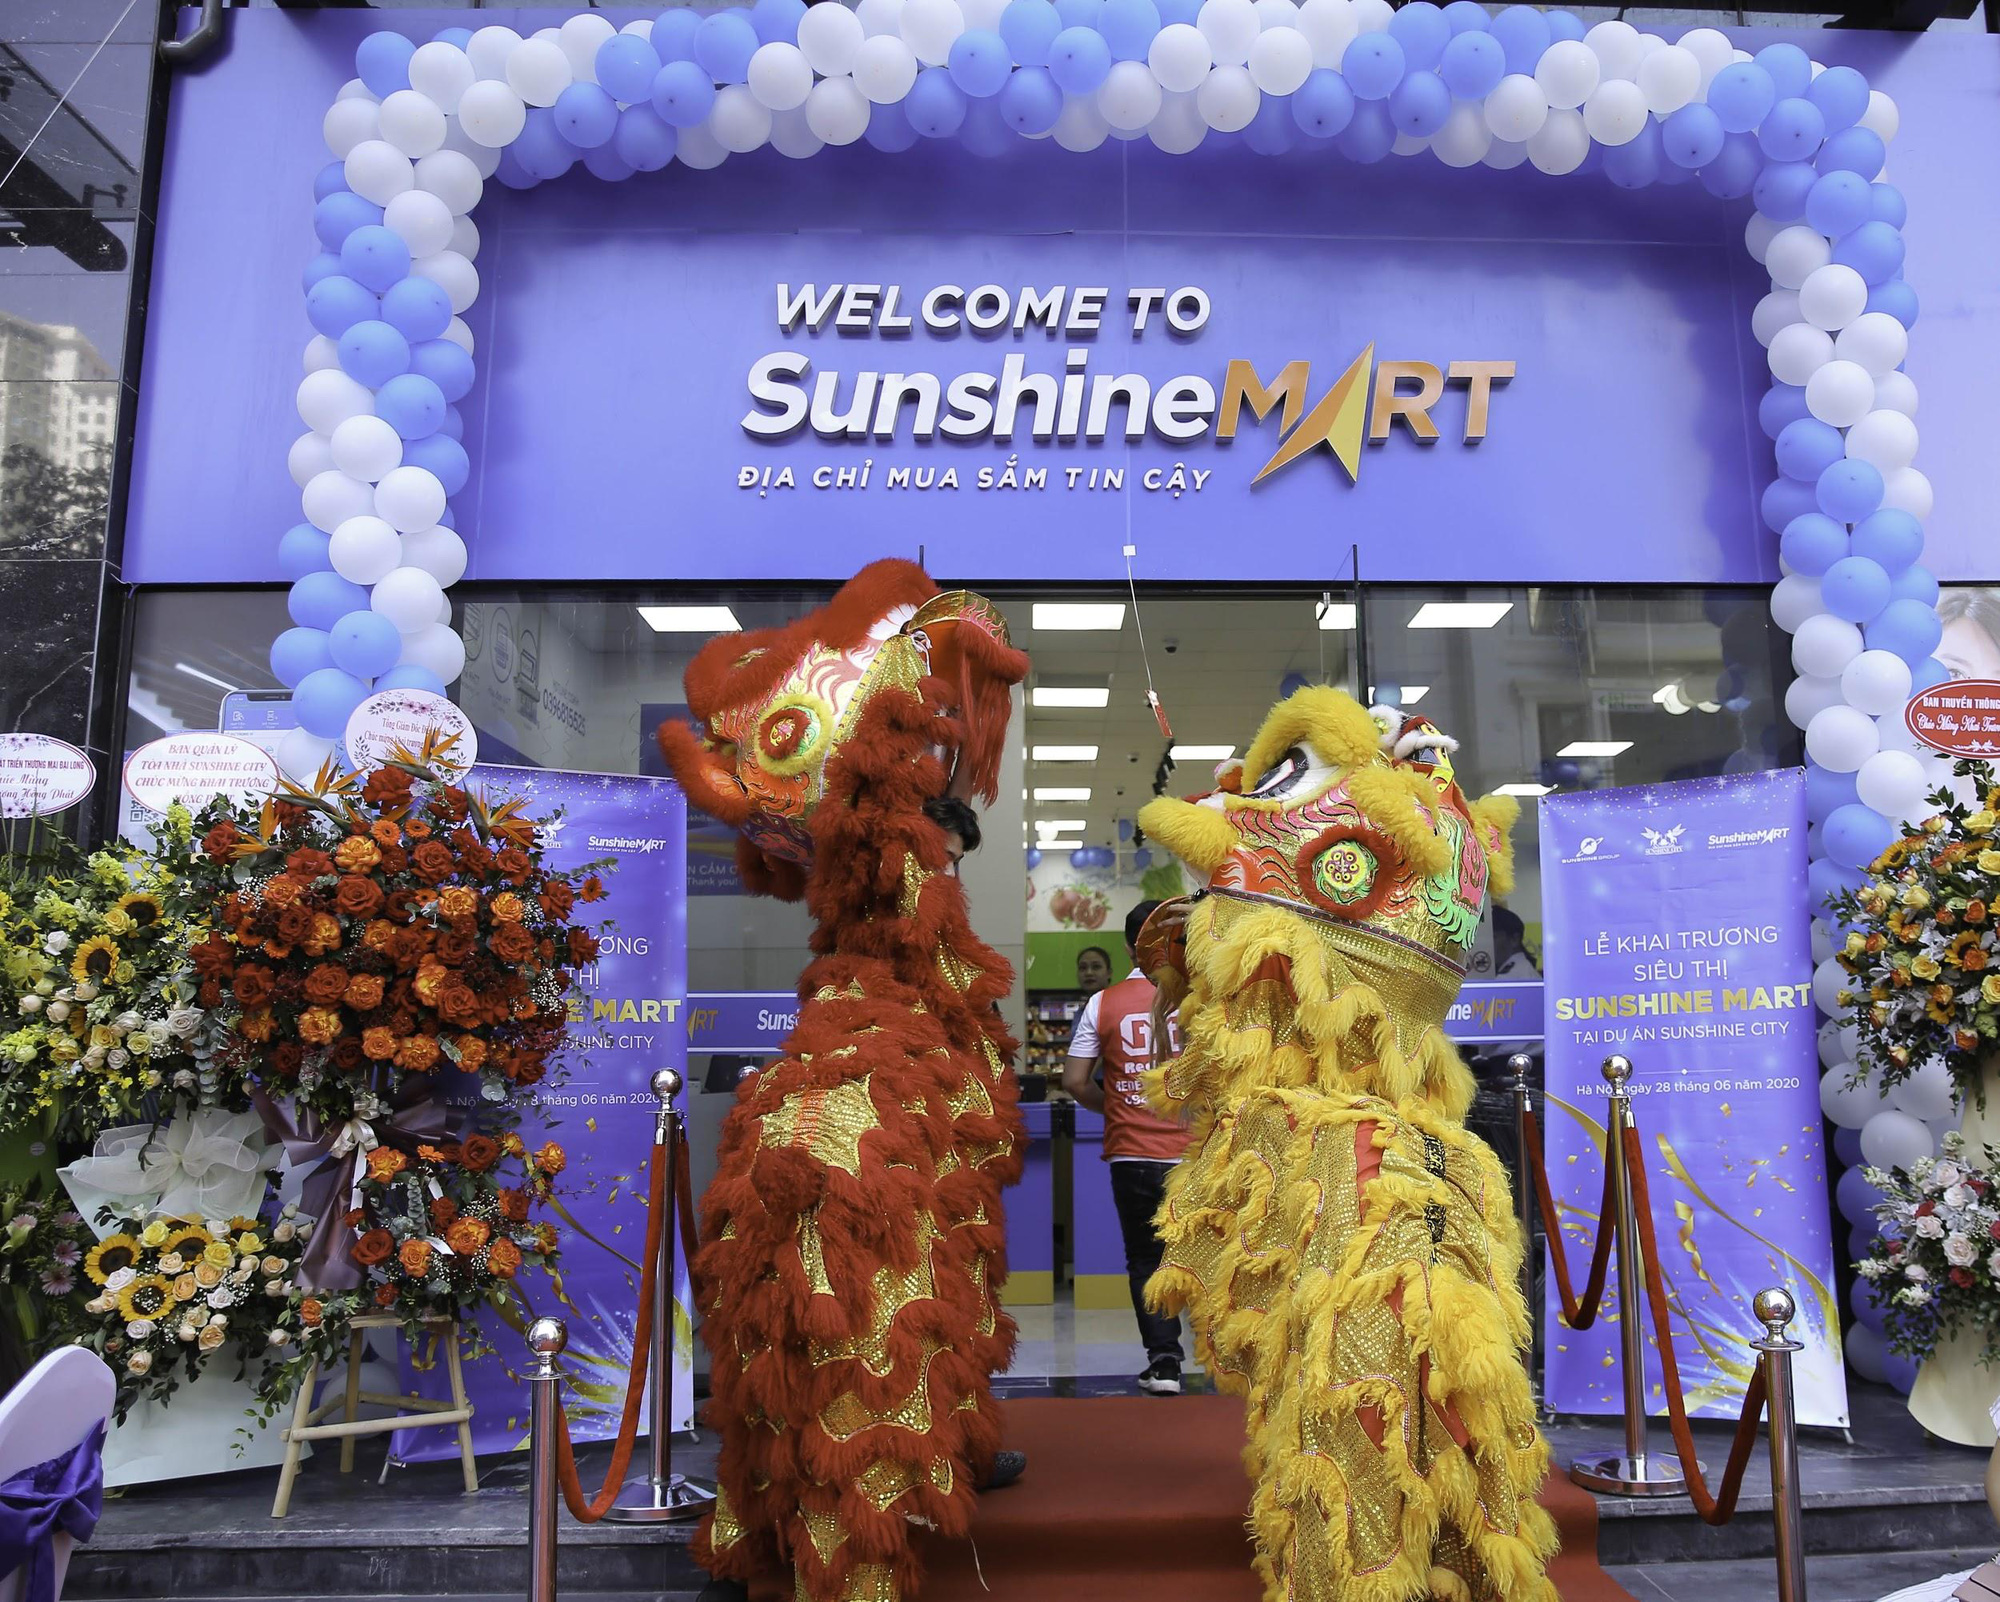 Sunshine City khai trương siêu thị Sunshine Mart - “Thế giới mua sắm” ngay dưới chân tòa nhà cho cư dân - Ảnh 1.